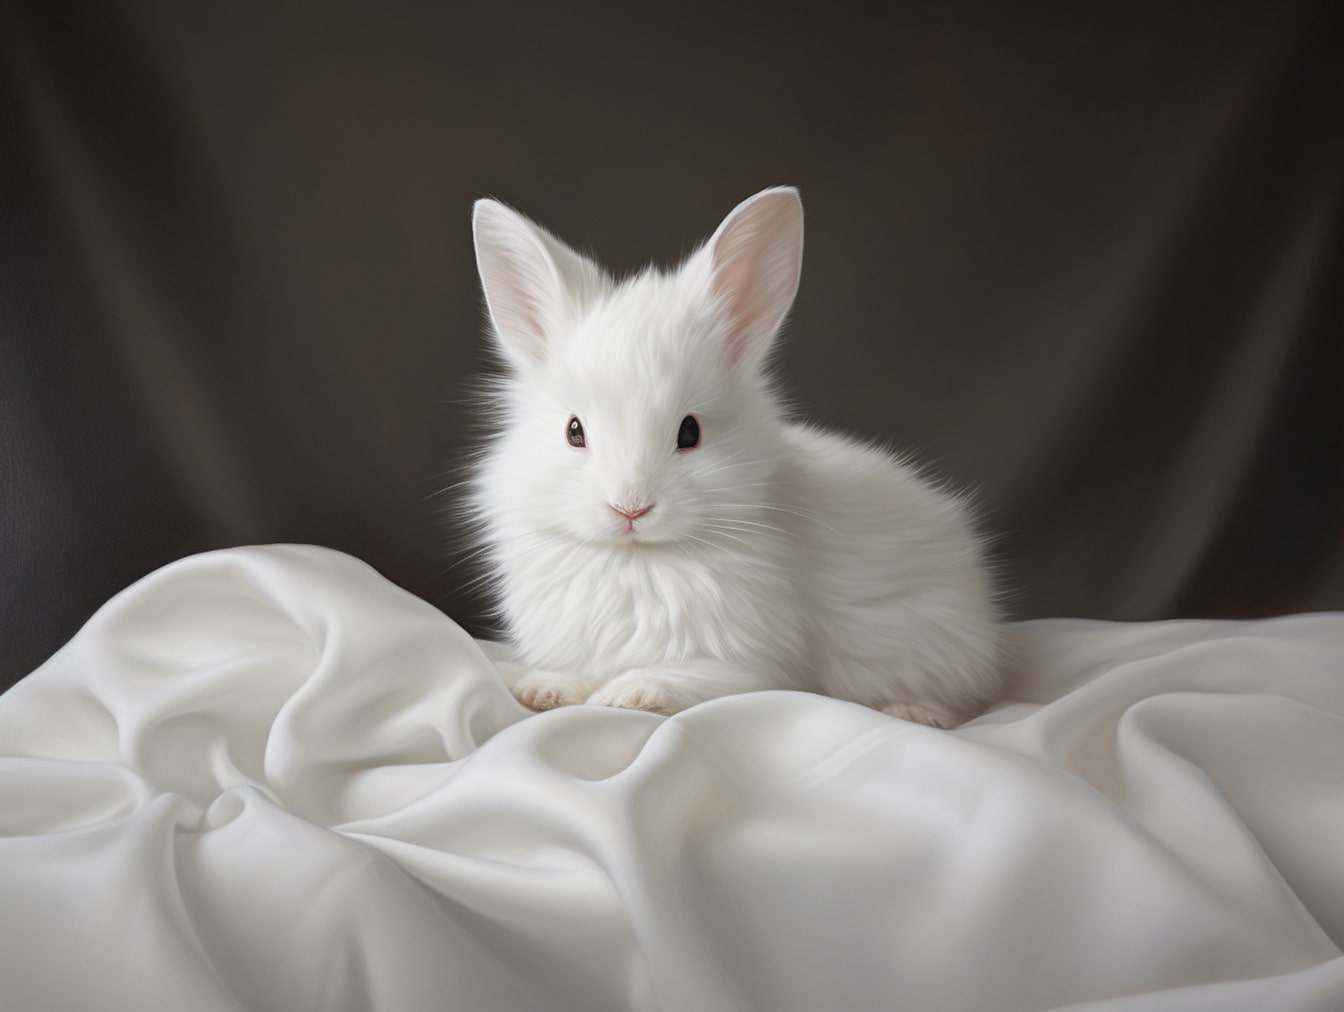 Majestatyczny biały króliczek na jedwabnym płótnie z szarym tłem